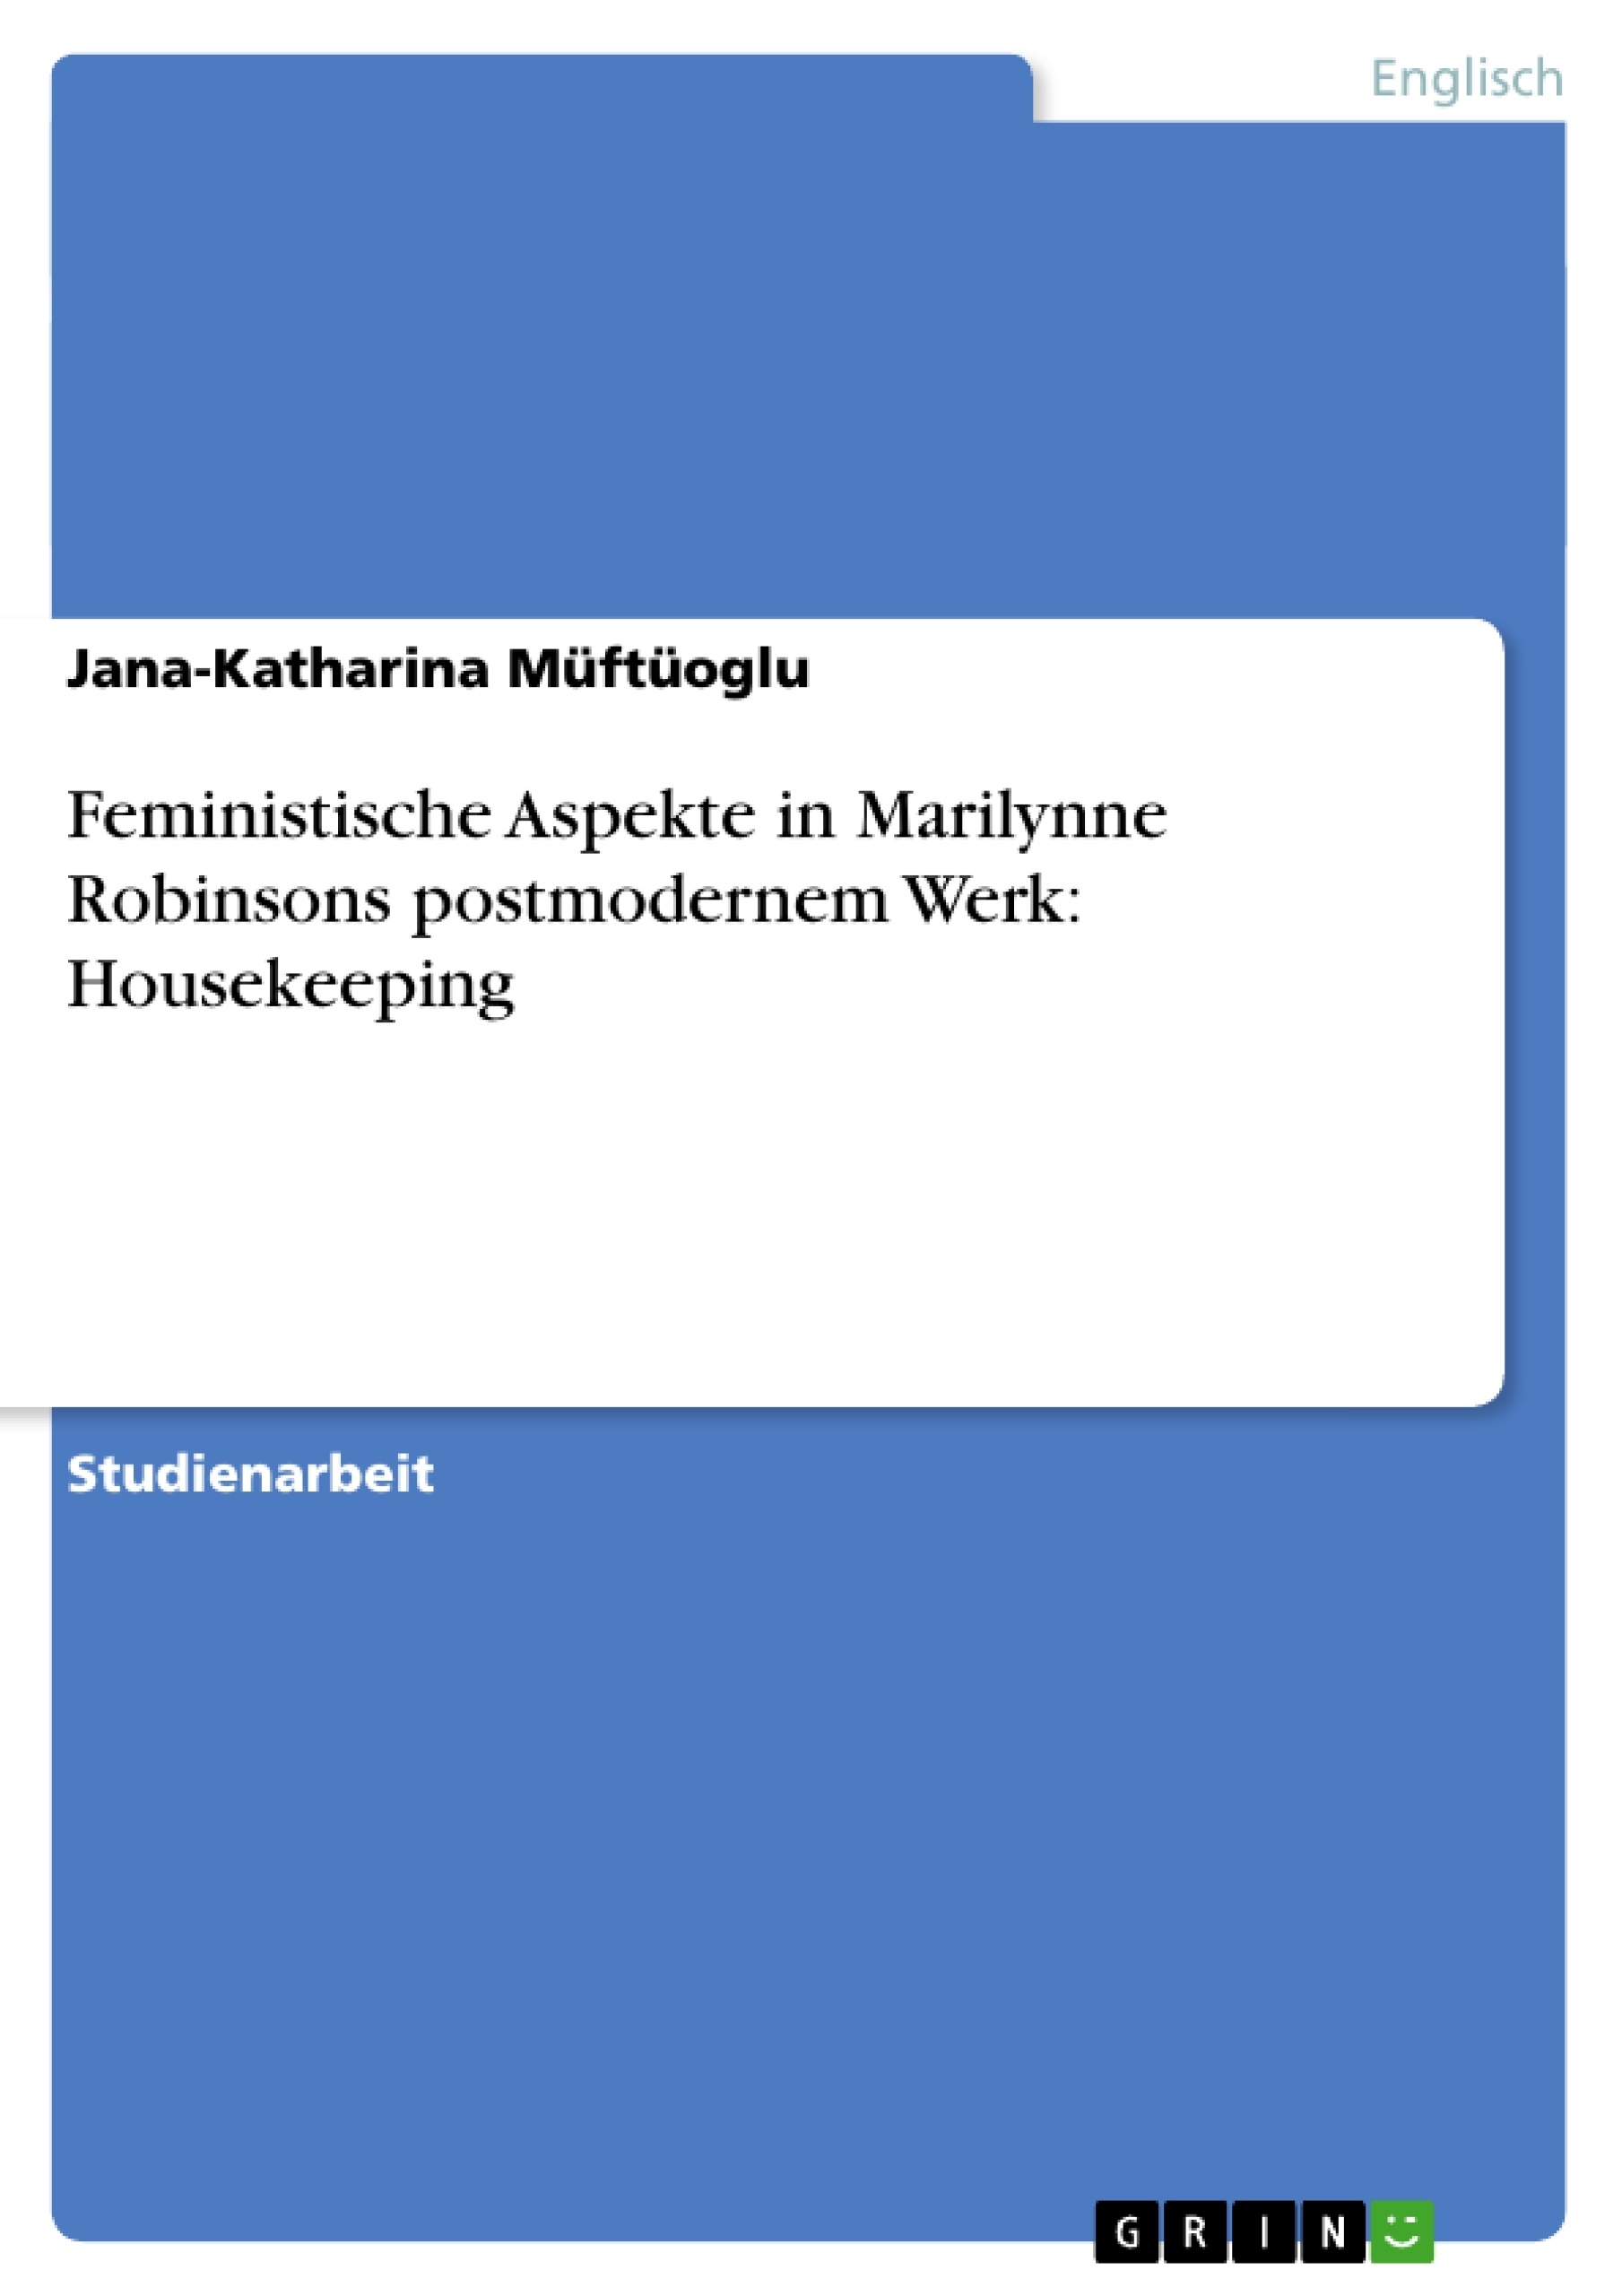 Title: Feministische Aspekte in Marilynne Robinsons postmodernem Werk: Housekeeping